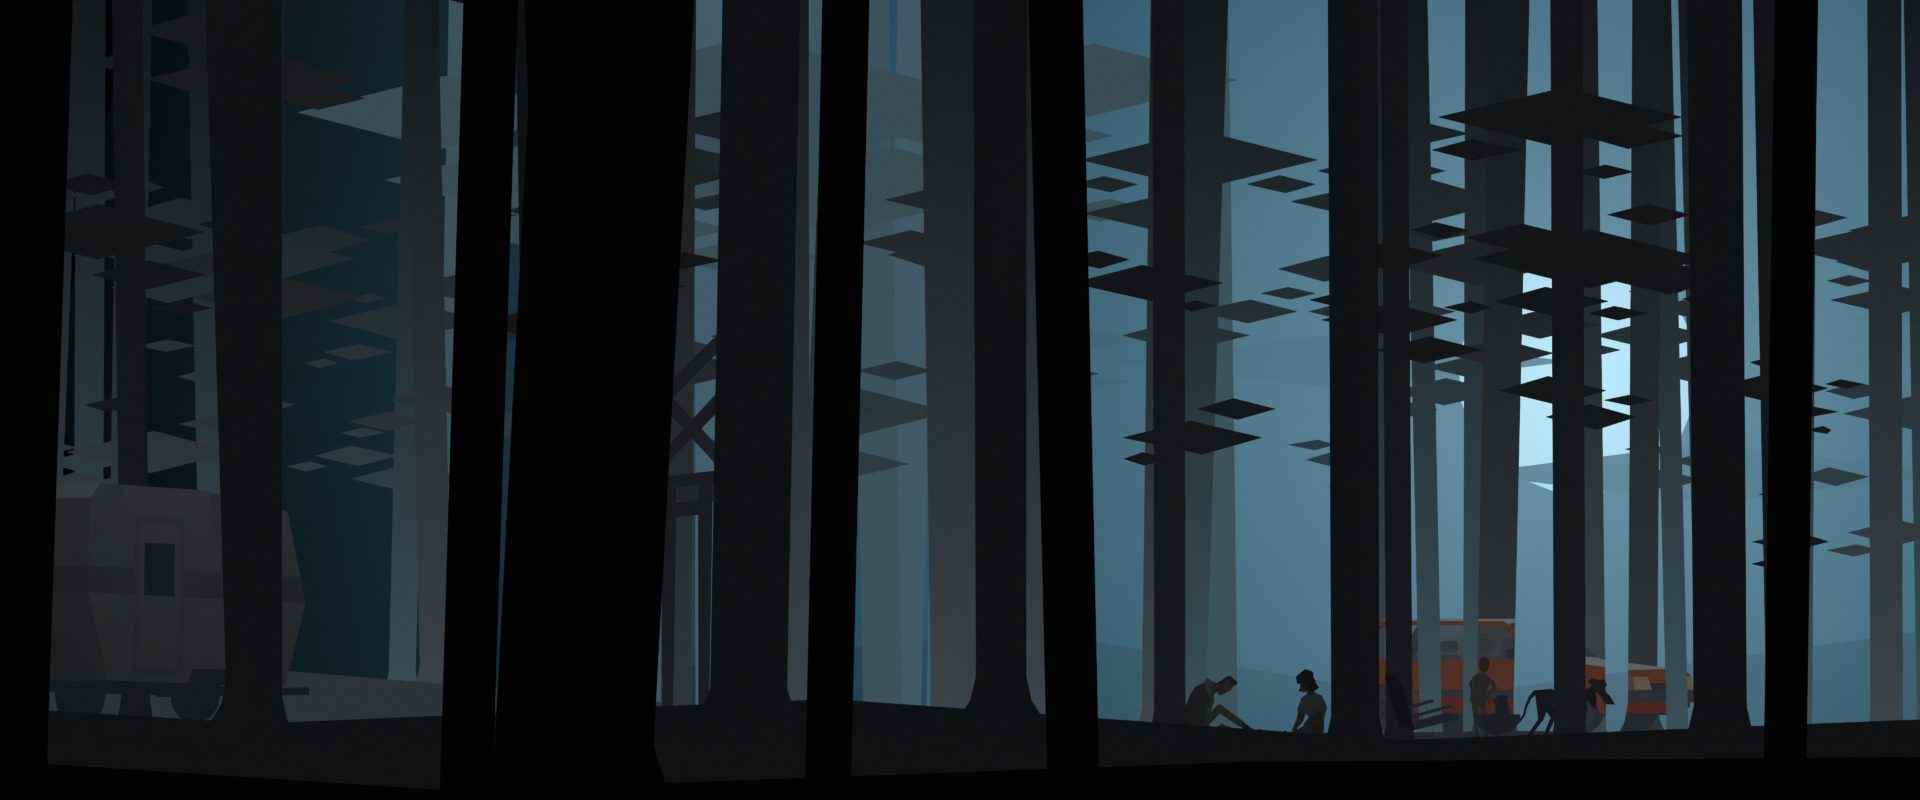 冒險遊戲《肯塔基州零號線》中的森林場景參考超現實主義藝術家馬格利特（René Magritte）畫作《空白簽名》，呈現濃厚的魔幻寫實風格。